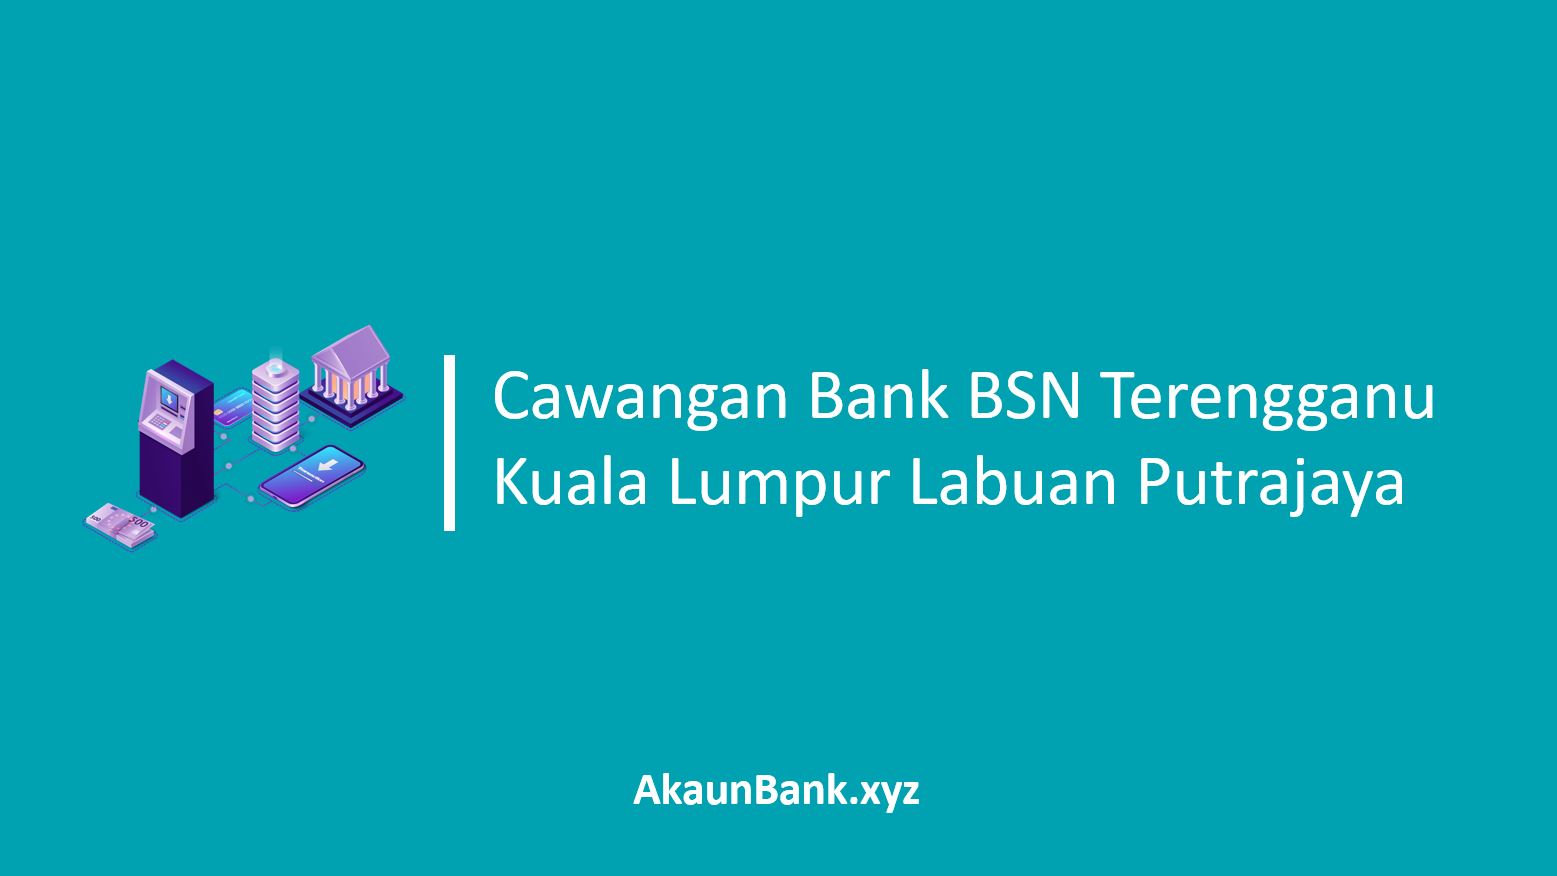 Cawangan Bank BSN Terengganu Kuala Lumpur Labuan Putrajaya